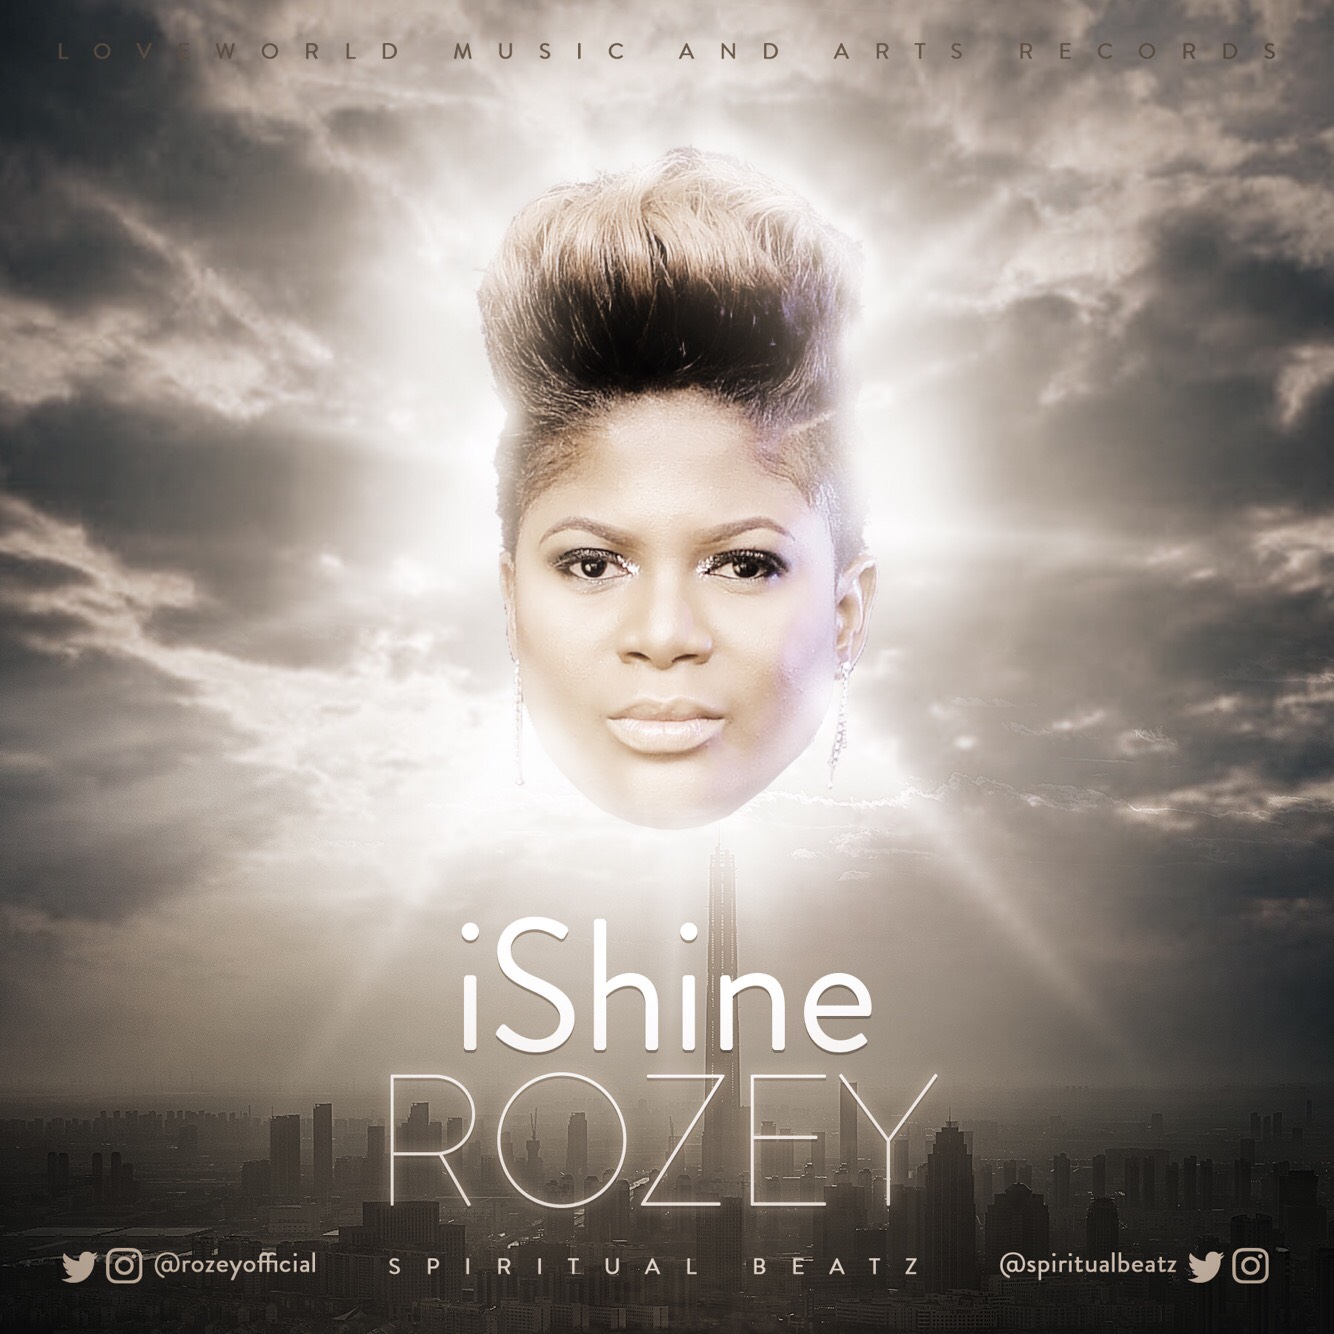 iShine - Rozey